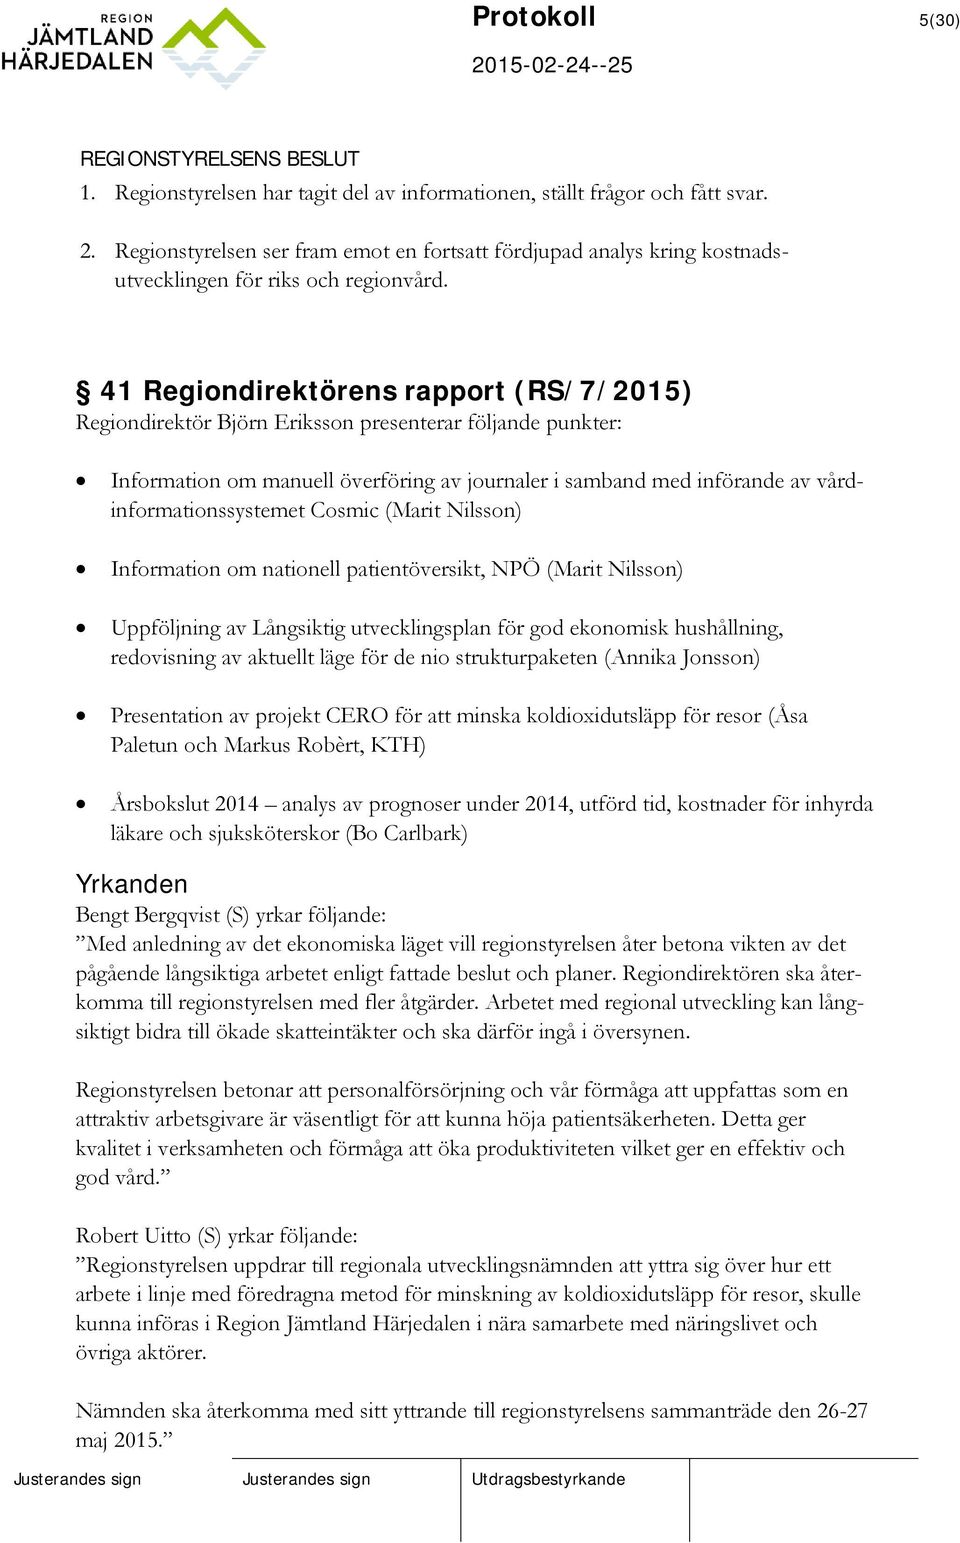 41 Regiondirektörens rapport (RS/7/2015) Regiondirektör Björn Eriksson presenterar följande punkter: Information om manuell överföring av journaler i samband med införande av vårdinformationssystemet